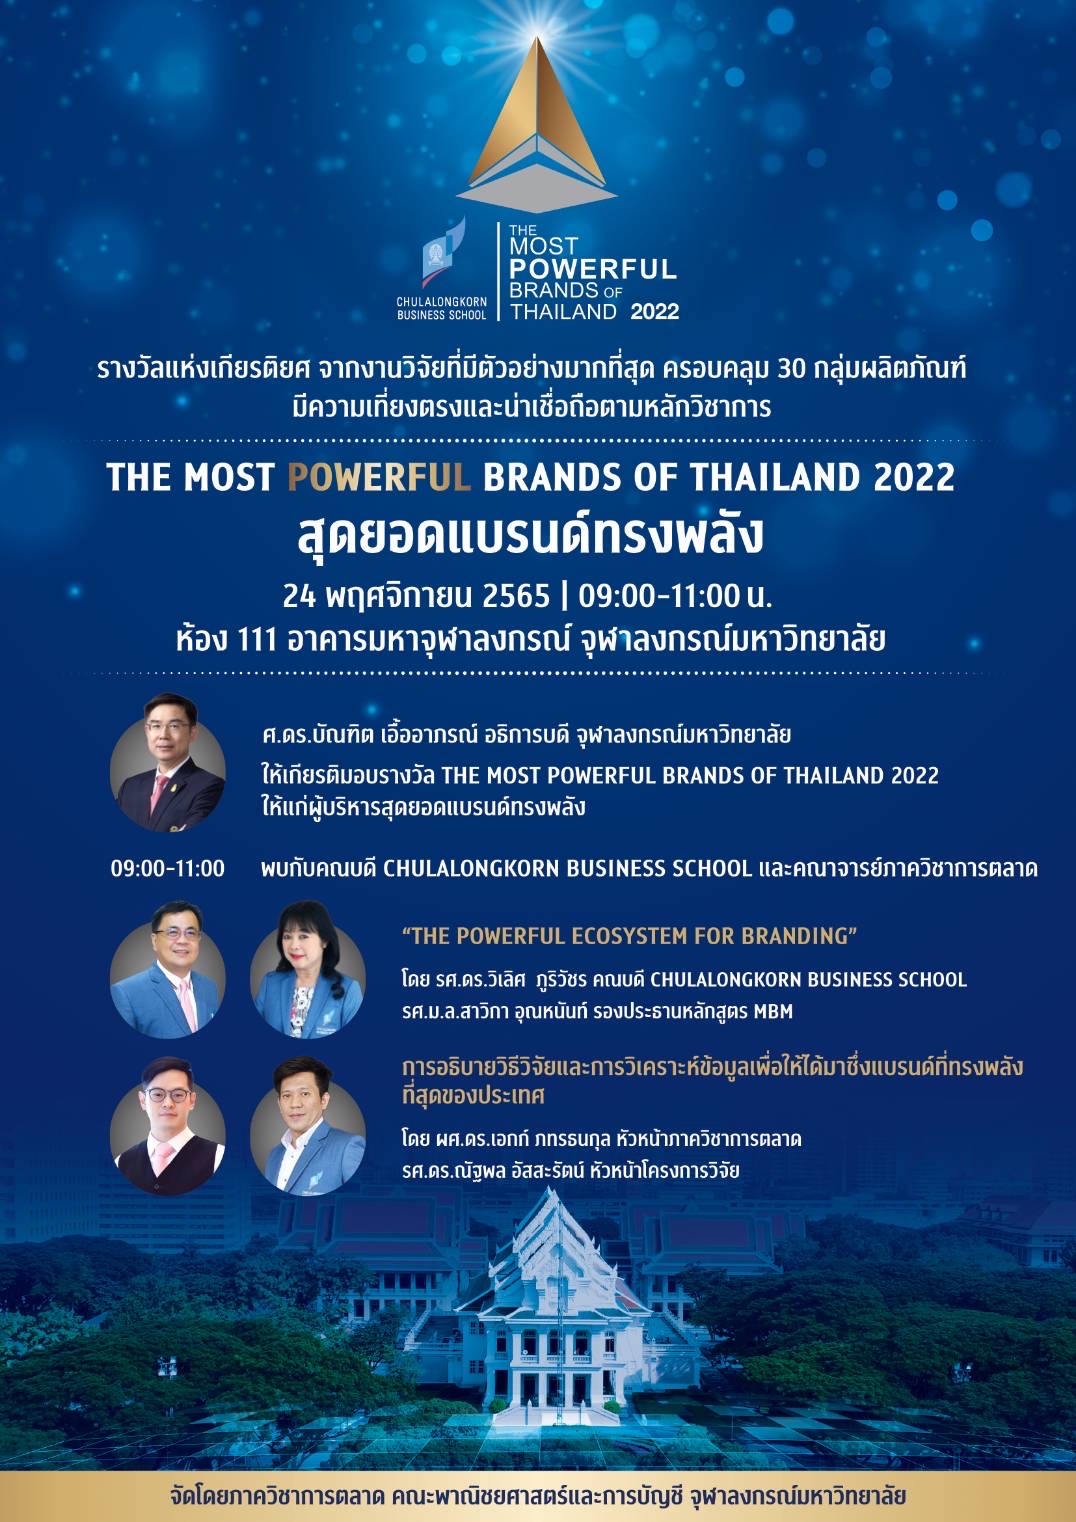 ภาควิชาการตลาด คณะพาณิชยศาสตร์และการบัญชี จุฬาลงกรณ์มหาวิทยาลัย เตรียมจัดงานประกาศผลและมอบรางวัล “สุดยอดแบรนด์ทรงพลัง (The Most Powerful Brands of Thailand)” ประจำปี 2565